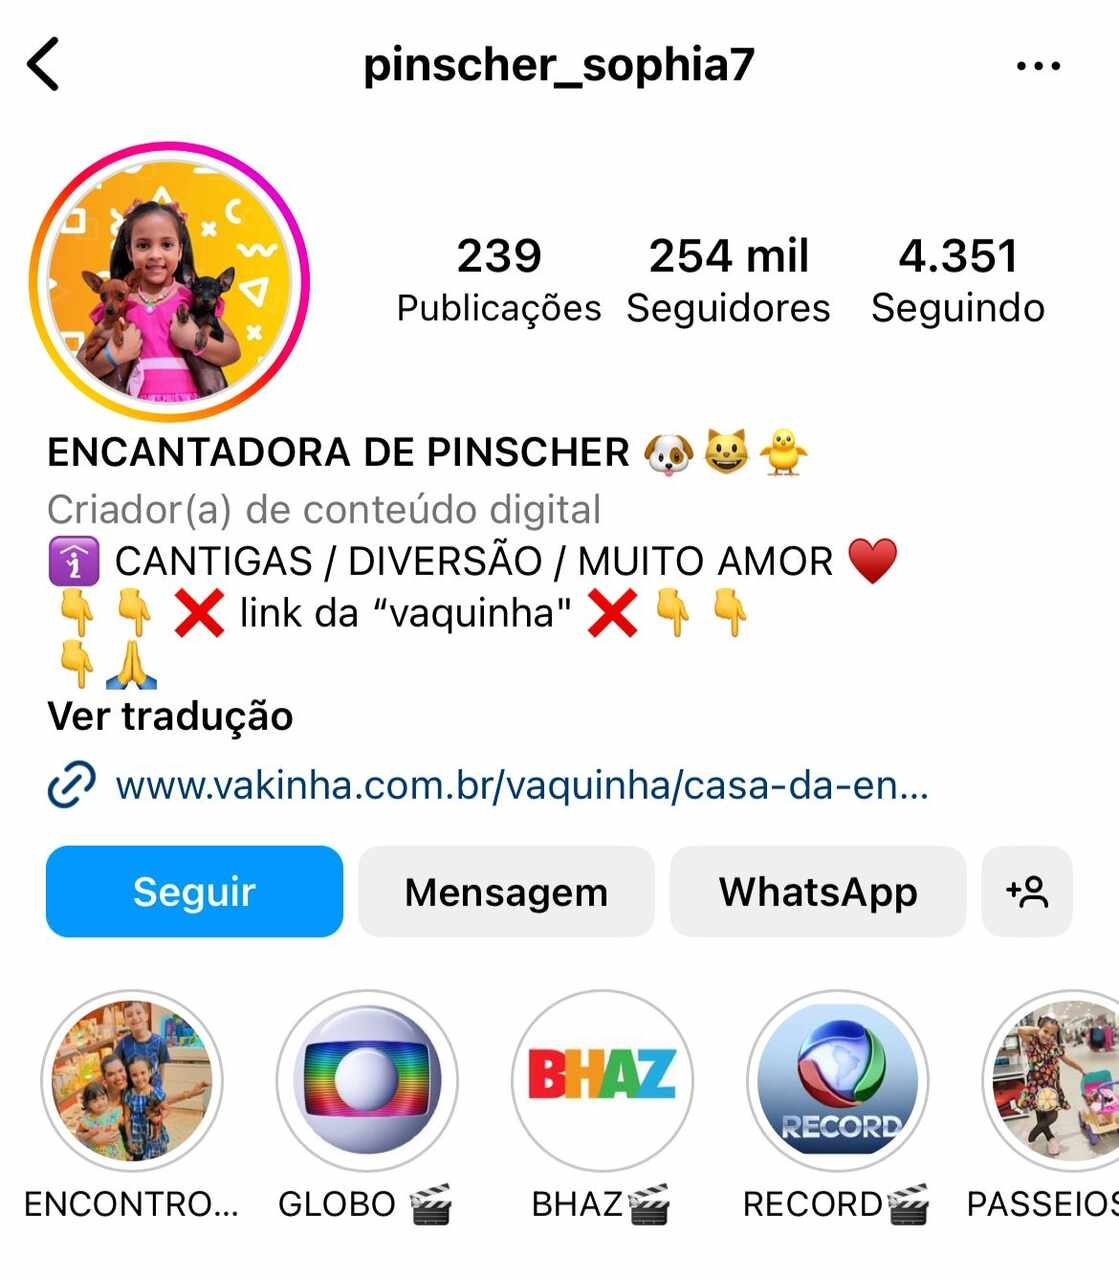 O perfil de Helena no Instagram já possui mais de 254 mil seguidores. A mãe dela espera que a filha possa inspirar outras crianças.